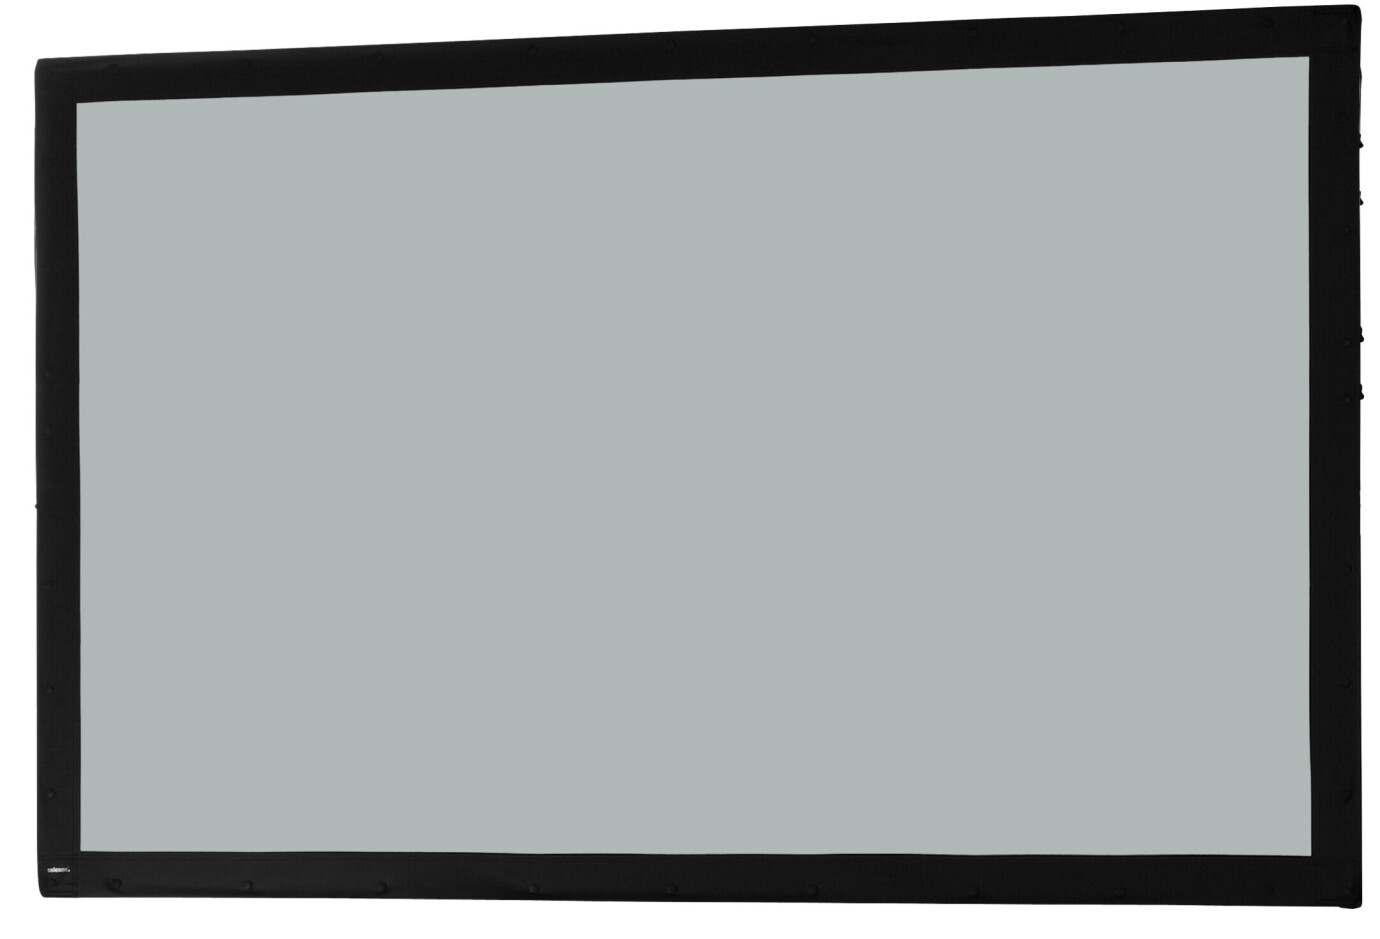 Toile 406 x 254 cm Ecran sur cadre celexon « Mobil Expert », projection arrière